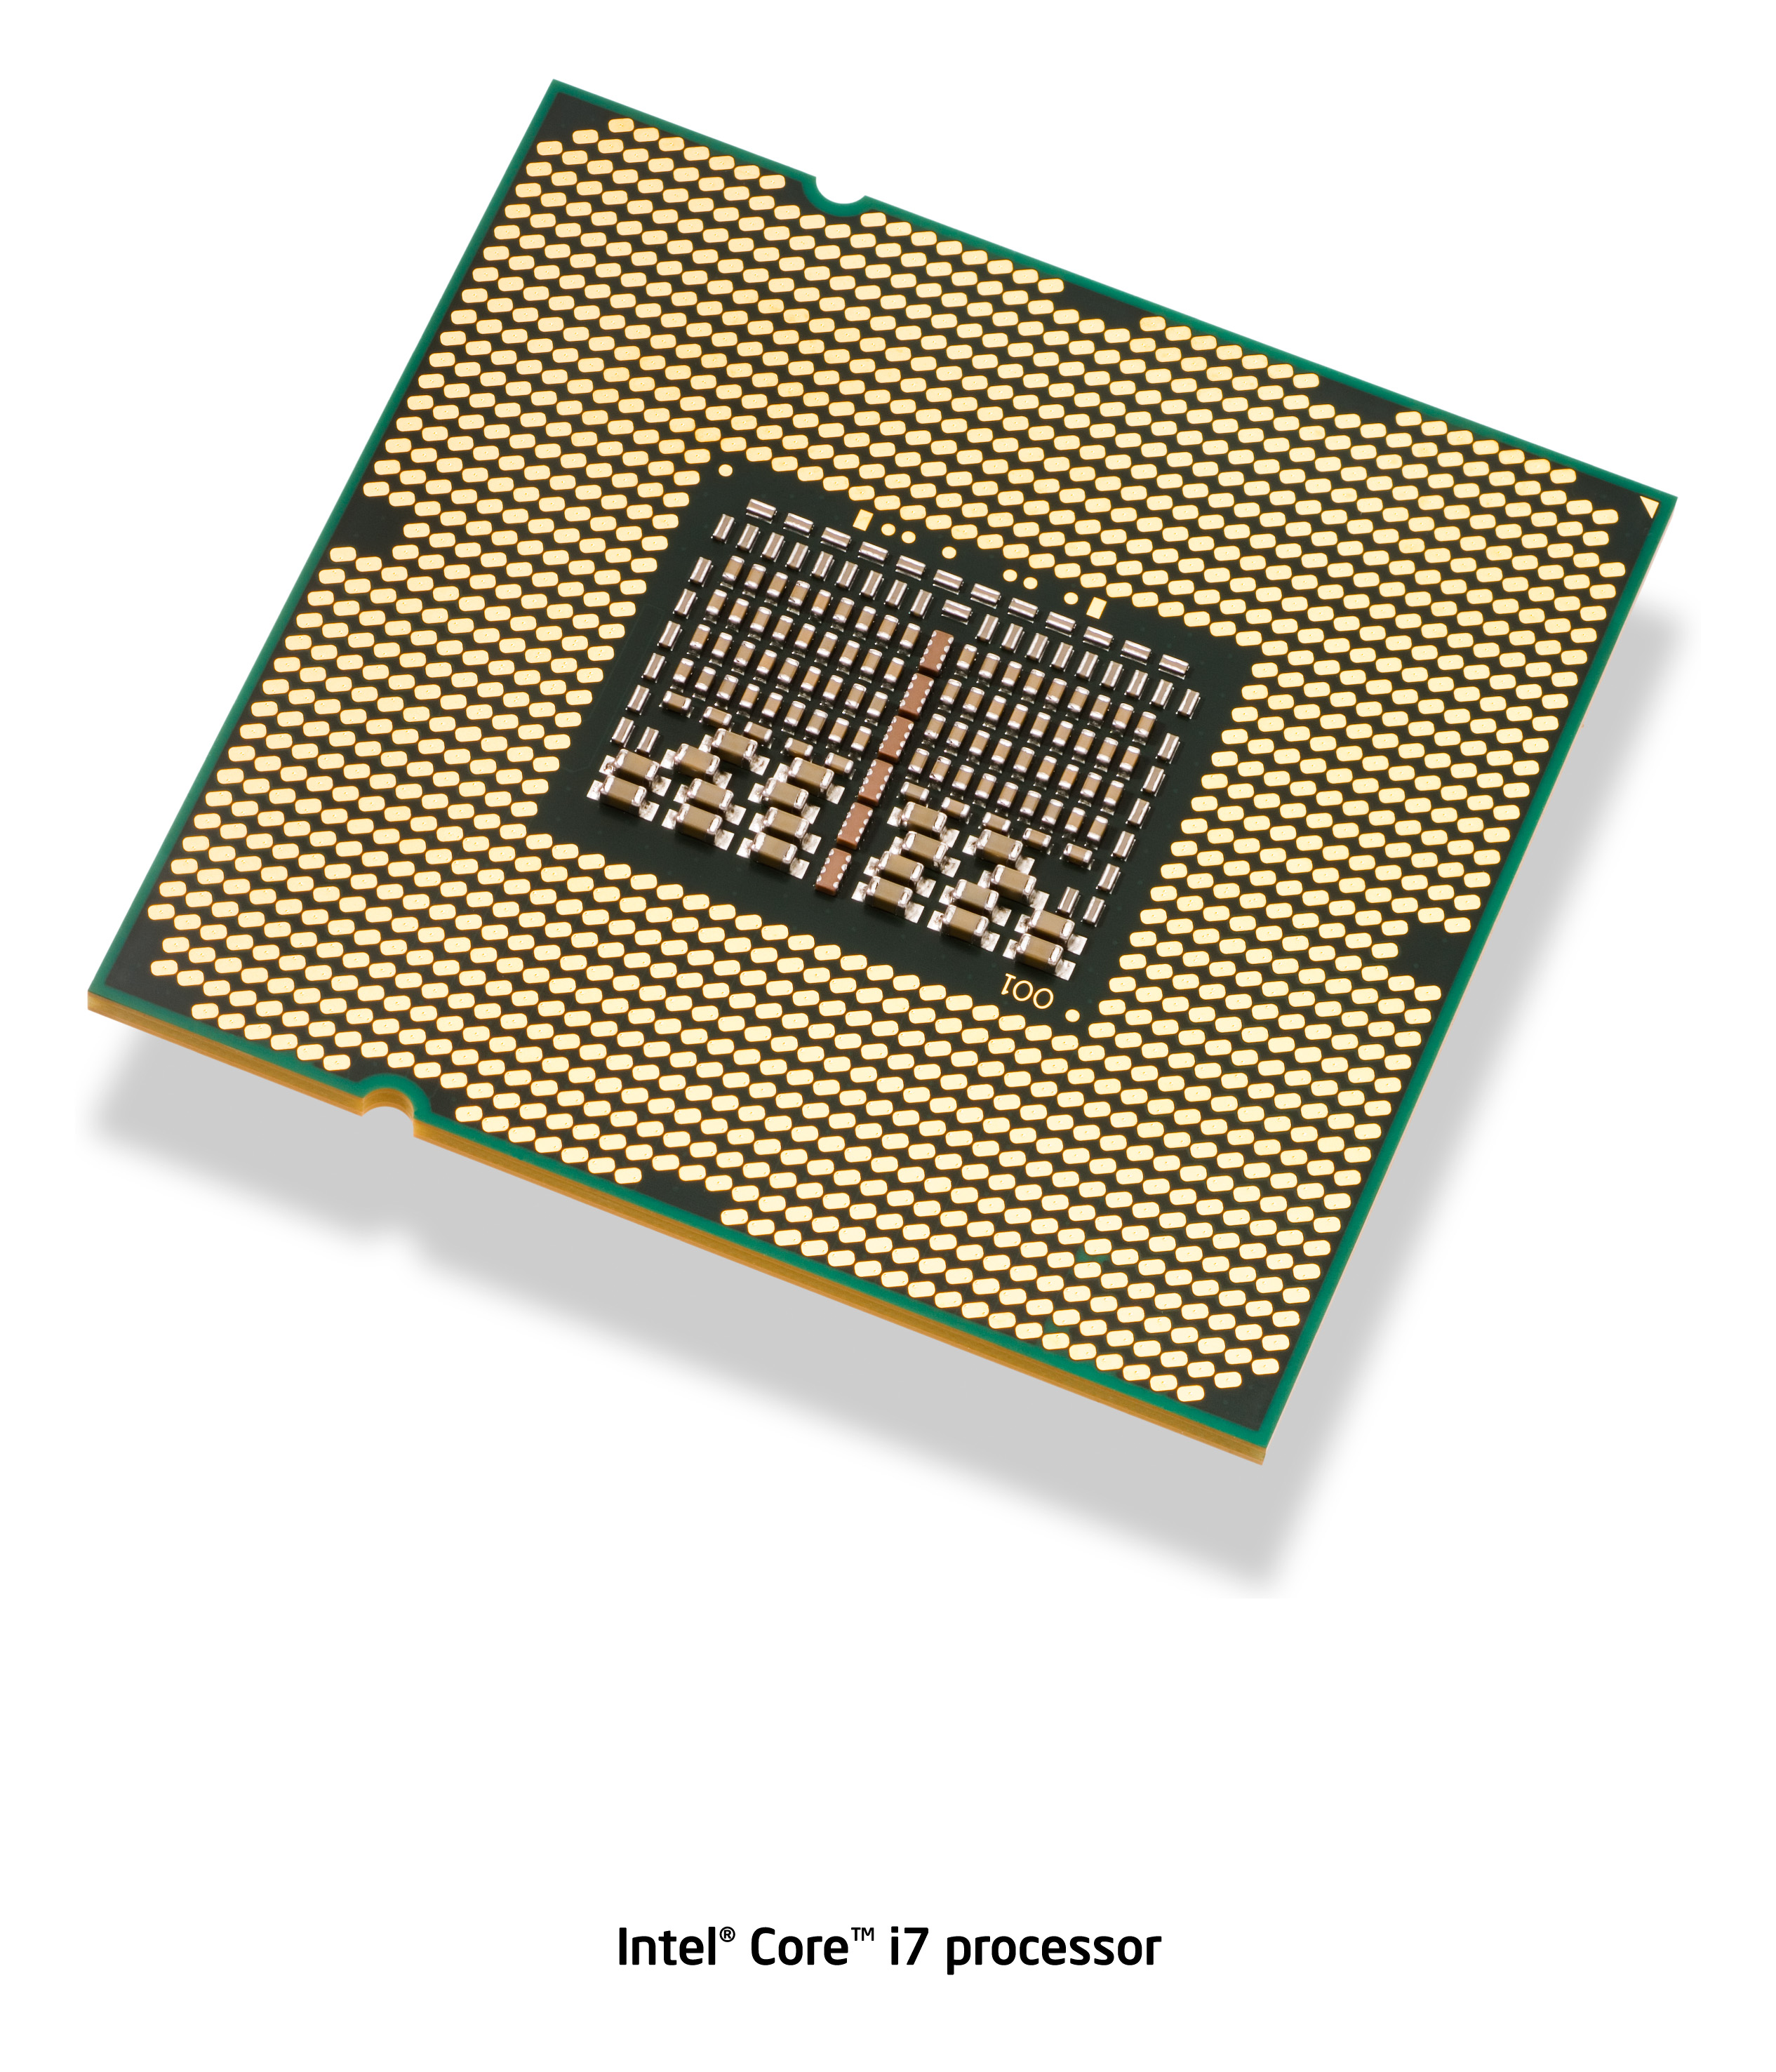 Immagine pubblicata in relazione al seguente contenuto: Intel lancia Core i7, il processore per desktop pi veloce al mondo | Nome immagine: news9033_2.jpg